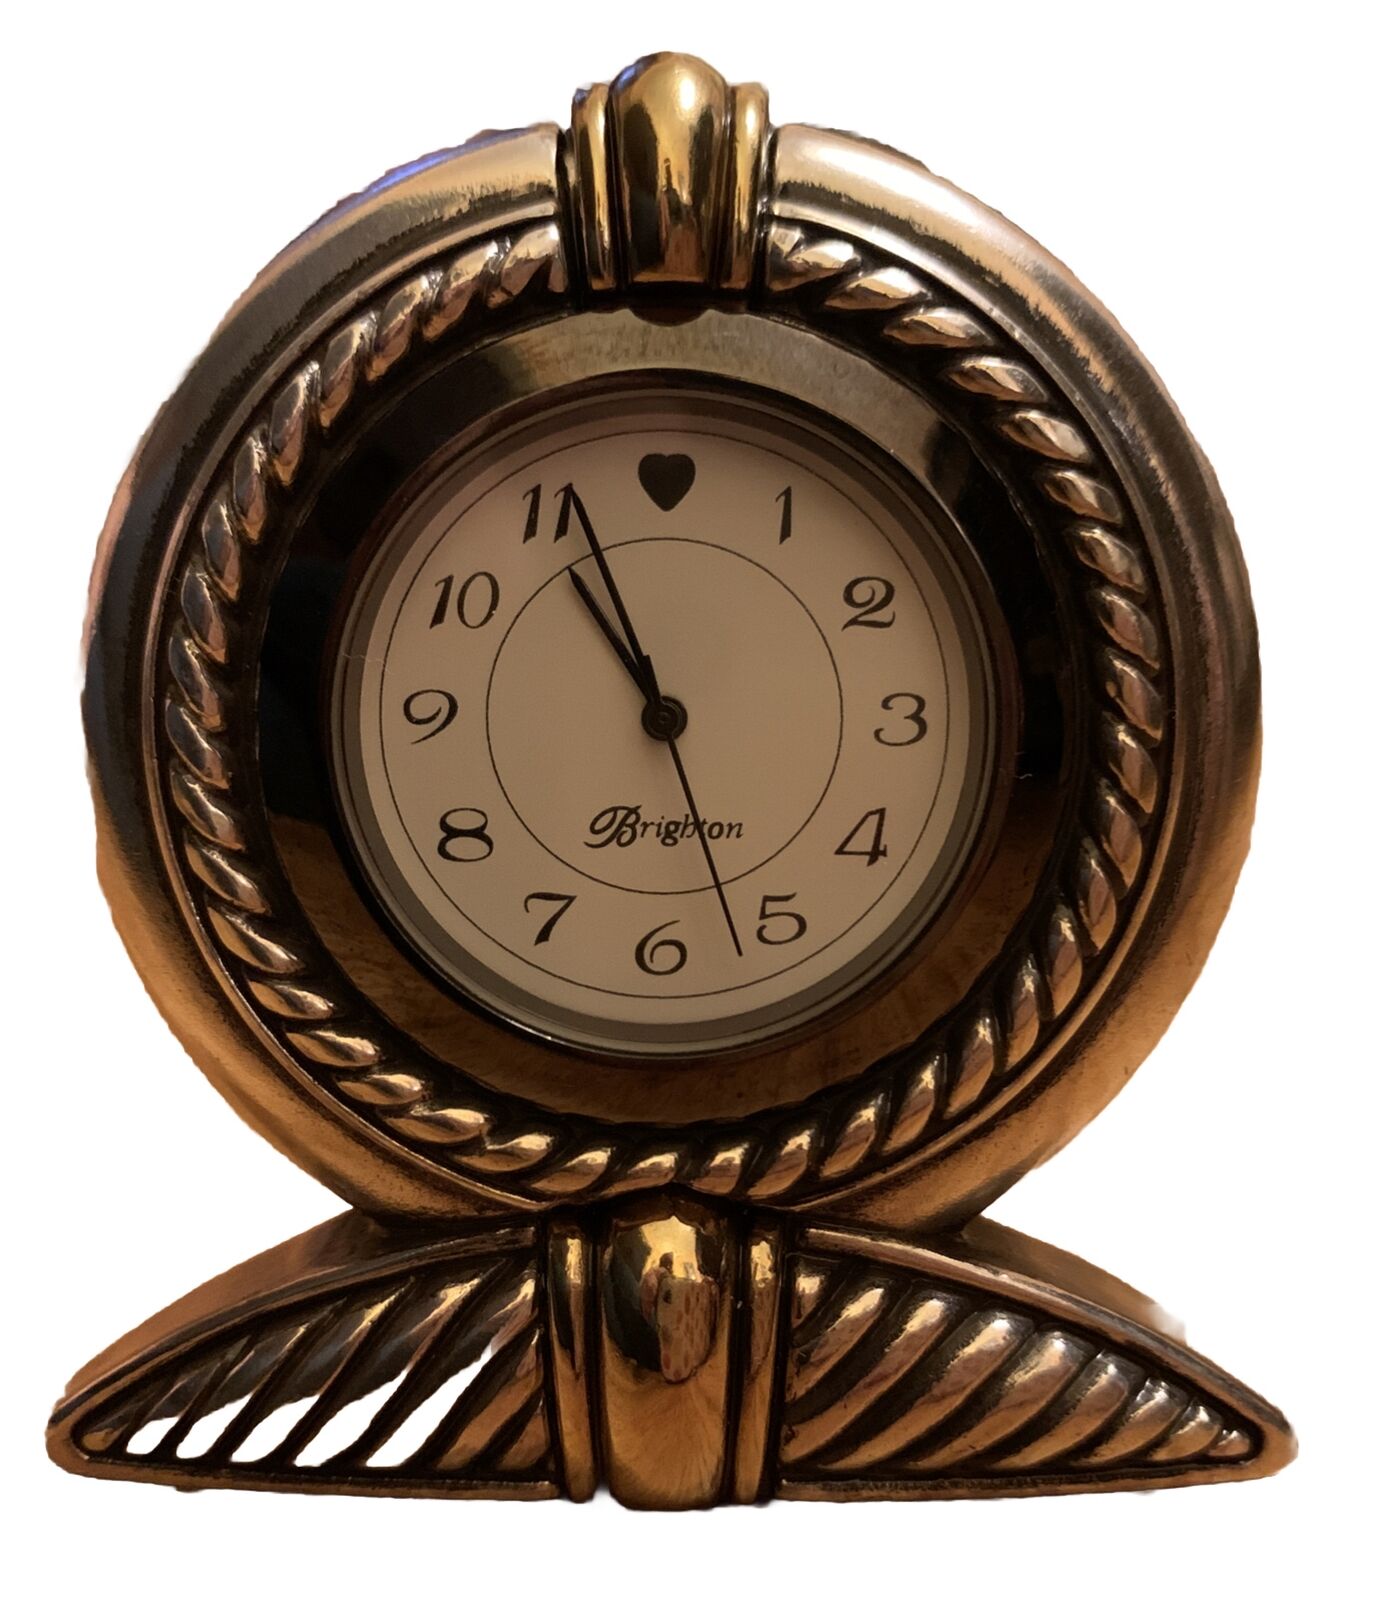 Brighton Desk Clock Collectible Silver and Gold Tone with Original Box